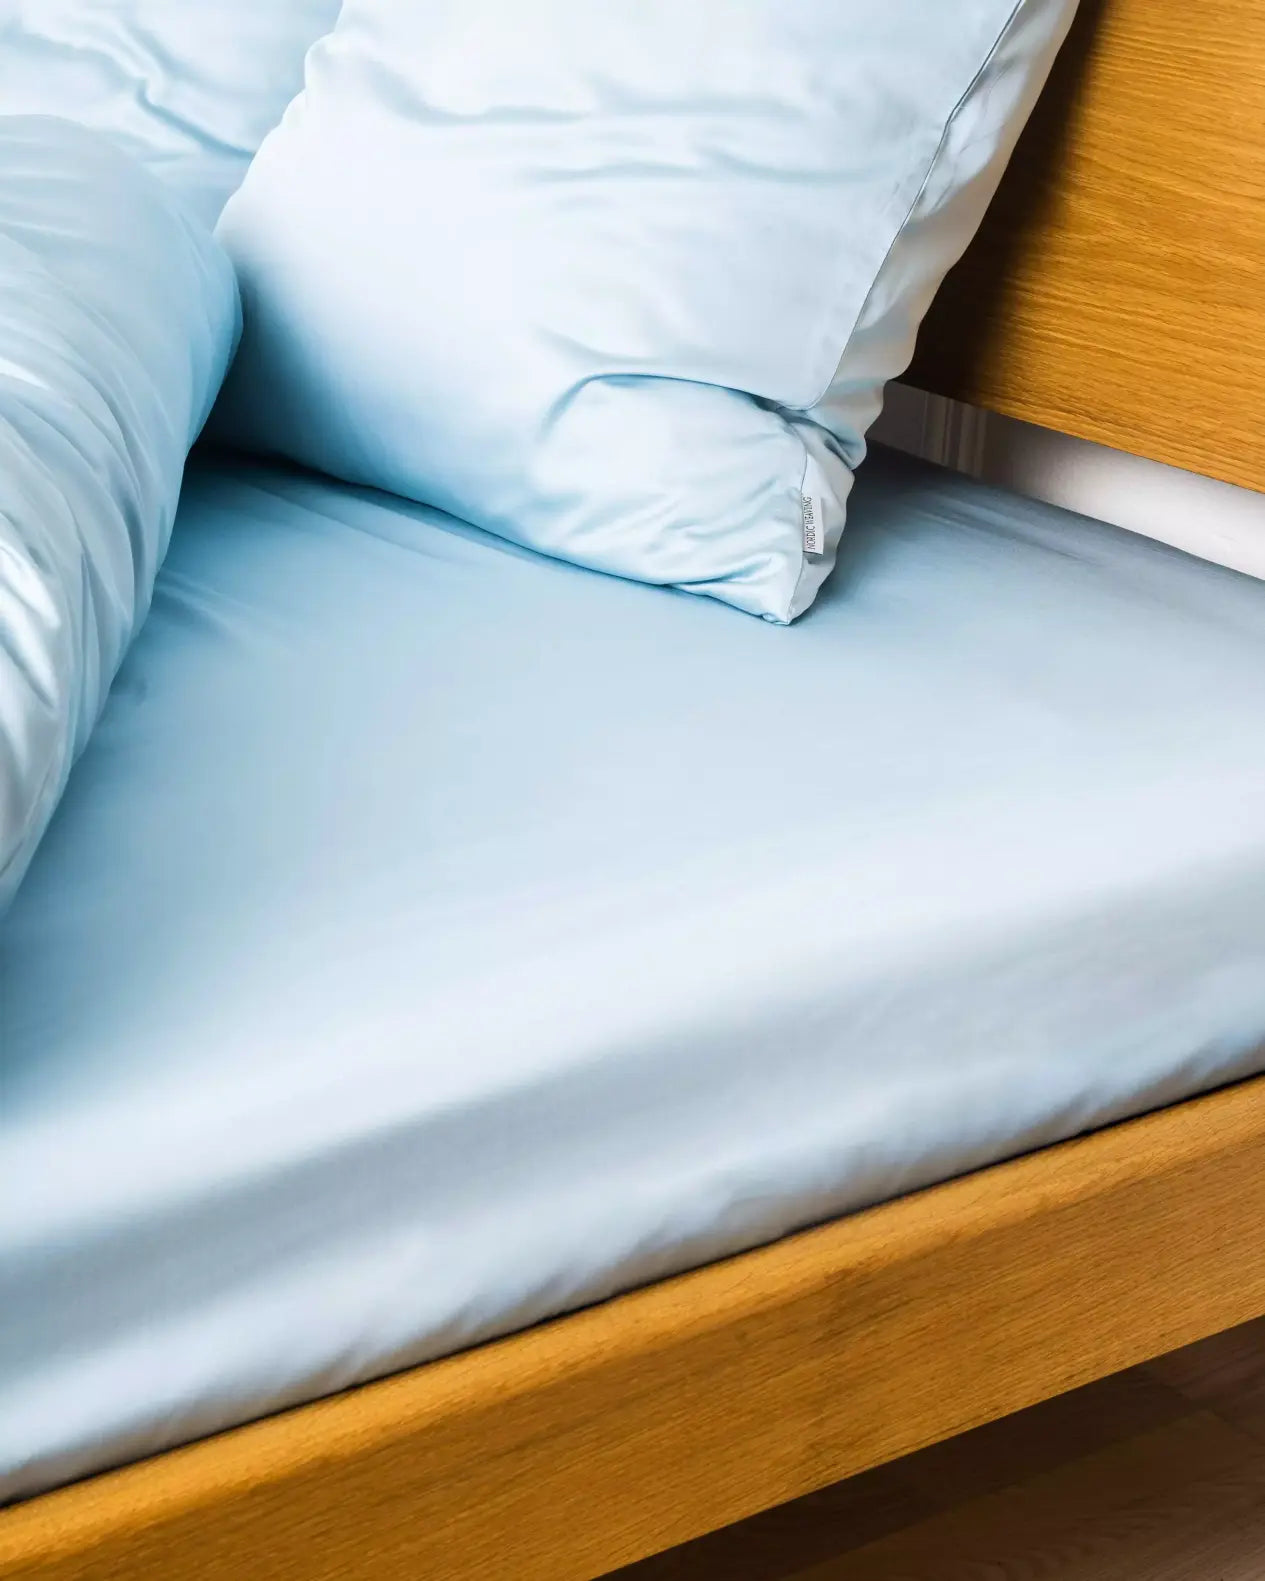 Miljøbillede af seng redt med bambus kuvertlagen i farven lys blå i størrelsen 140x200x20cm